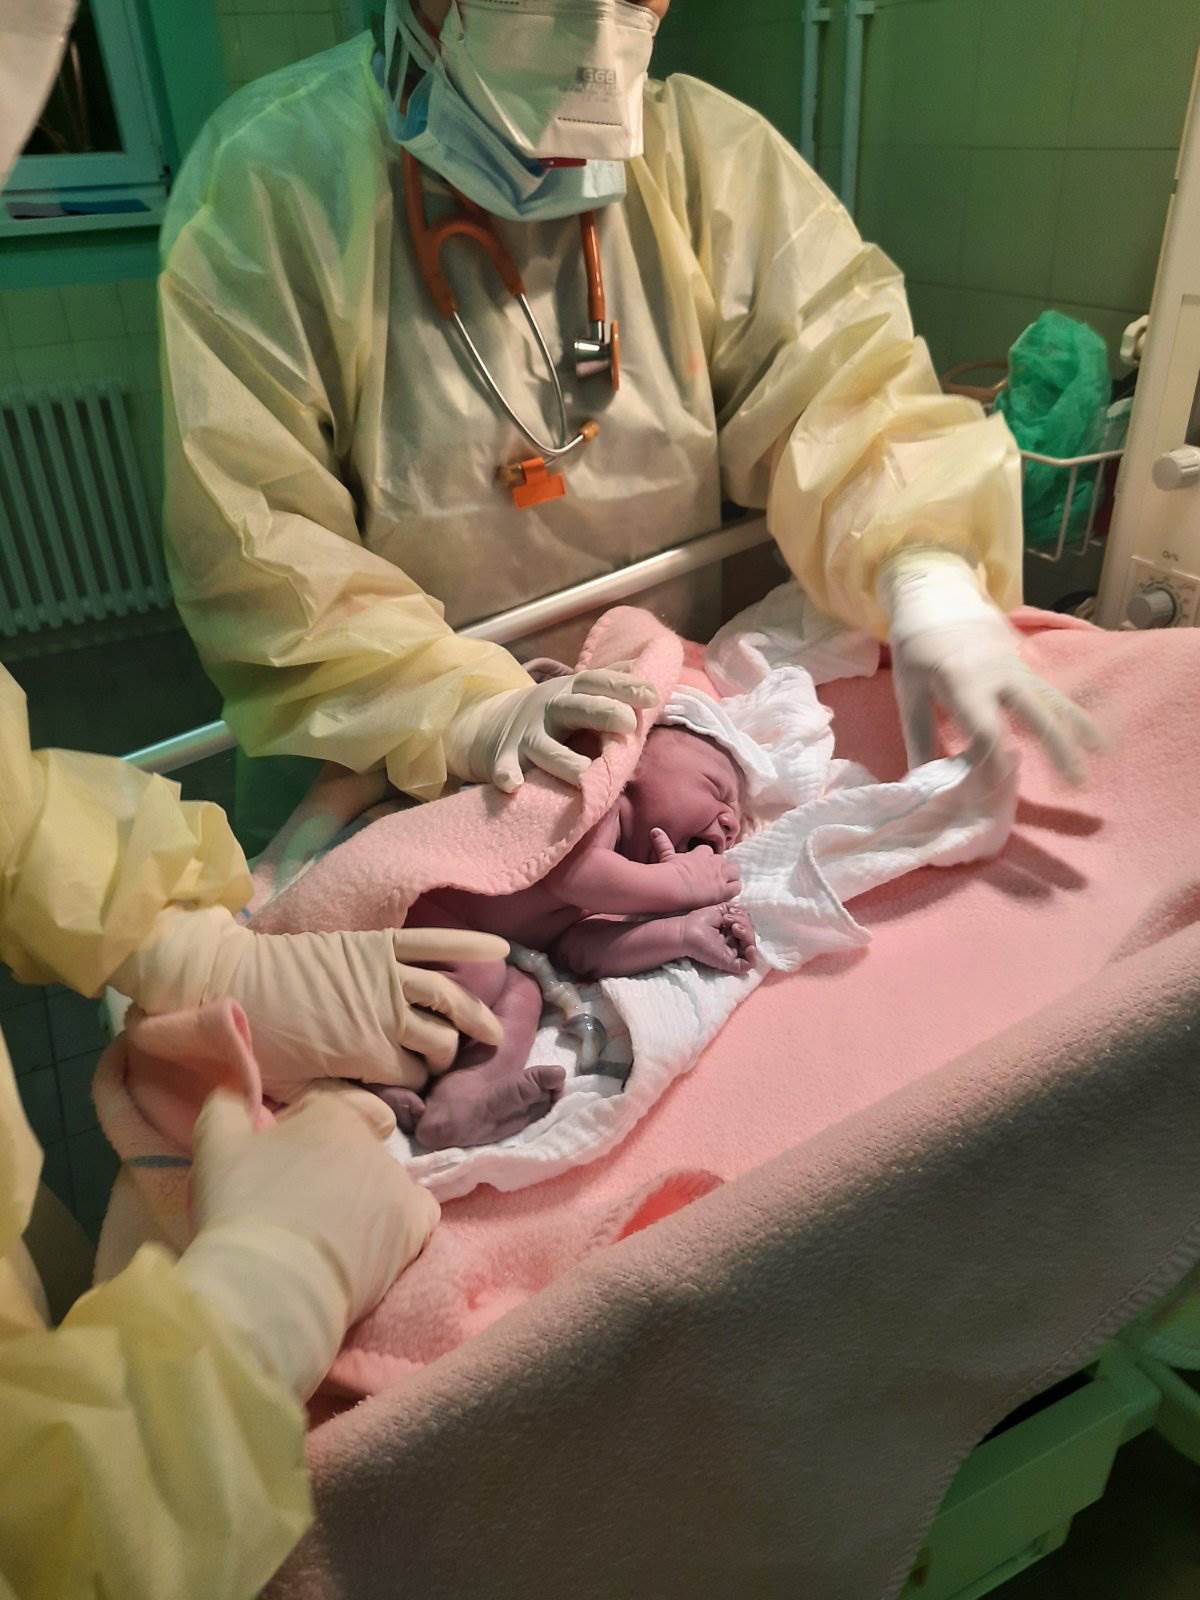  Lijepe vijesti iz Bijeljine: Rođena prva beba u izolaciji 